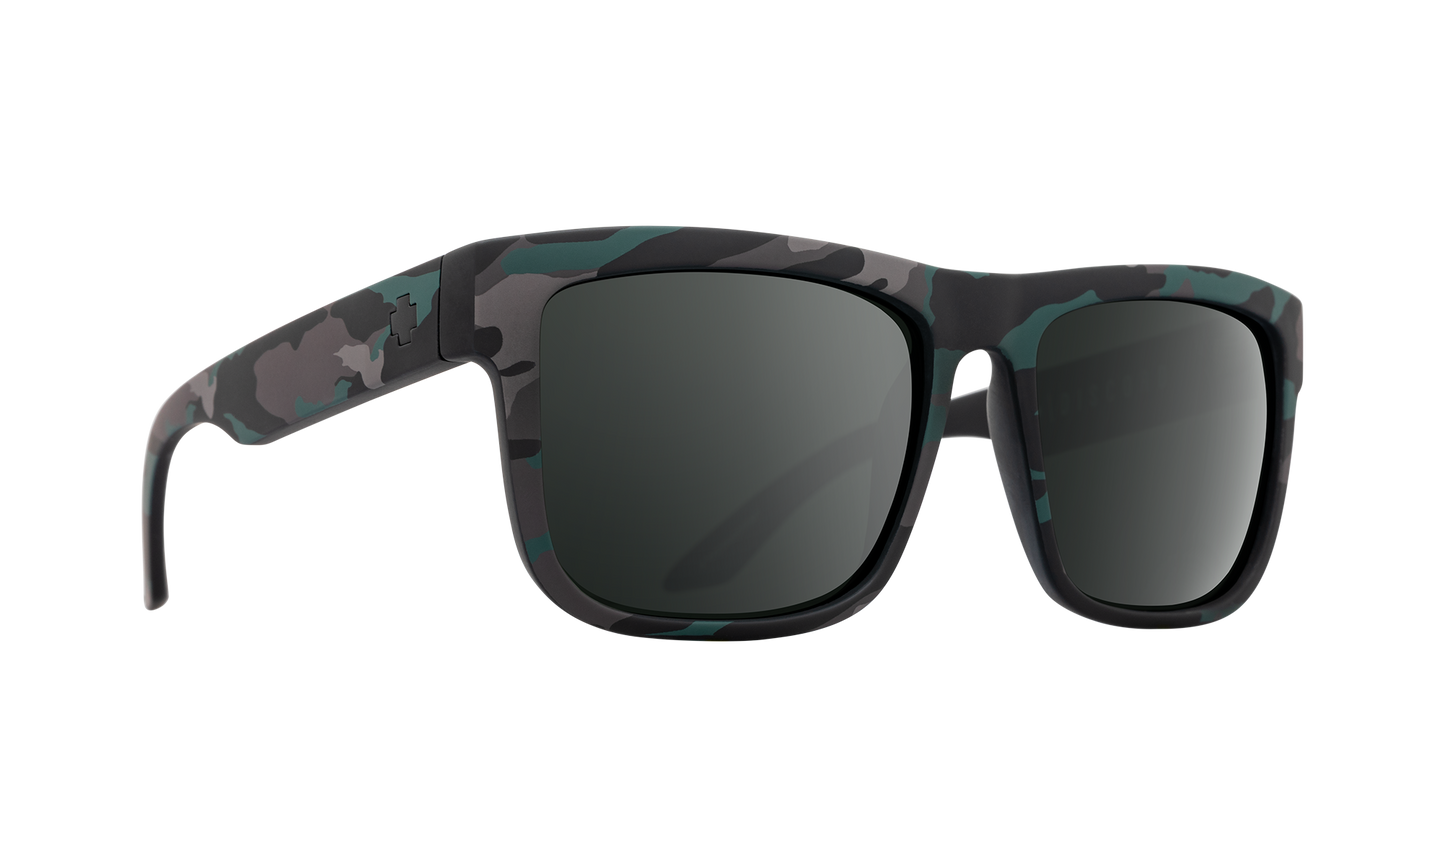 SPY Discord Sunglasses  HD Plus Gray Green w/ Black Spectra Mirror Stealth Camo  57-17-145